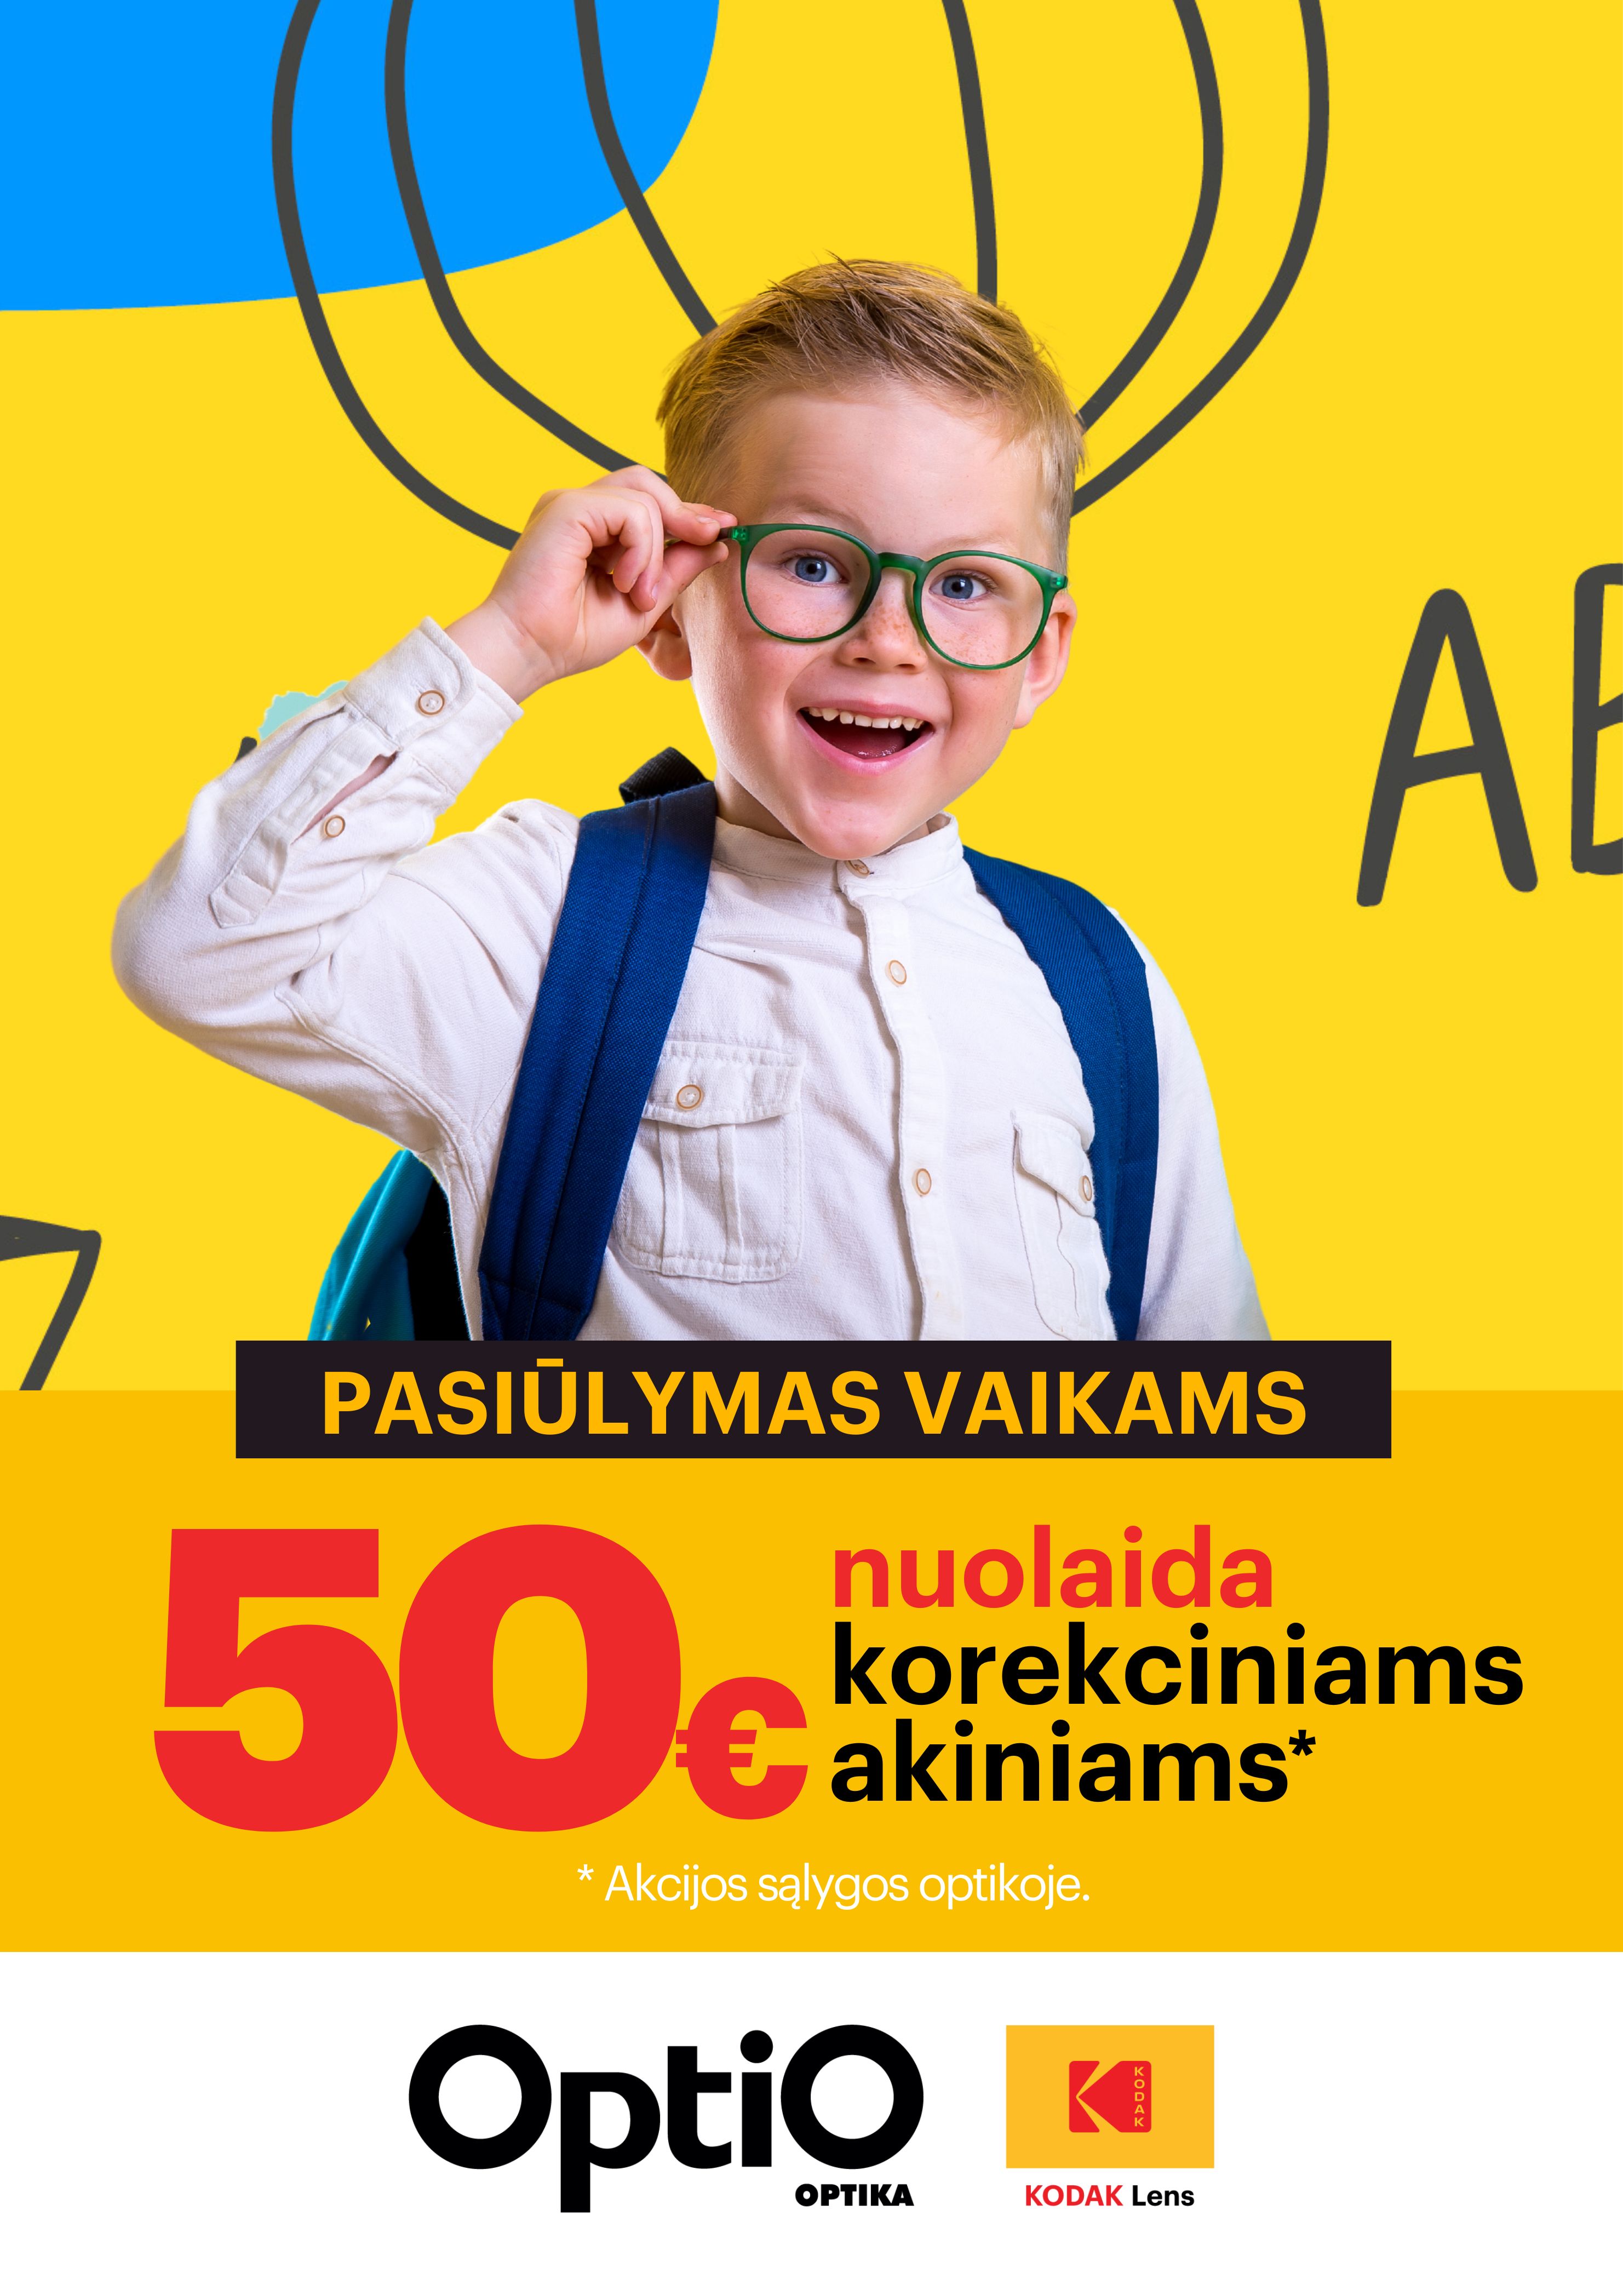 50 € nuolaida vaikų korekciniams akiniams!